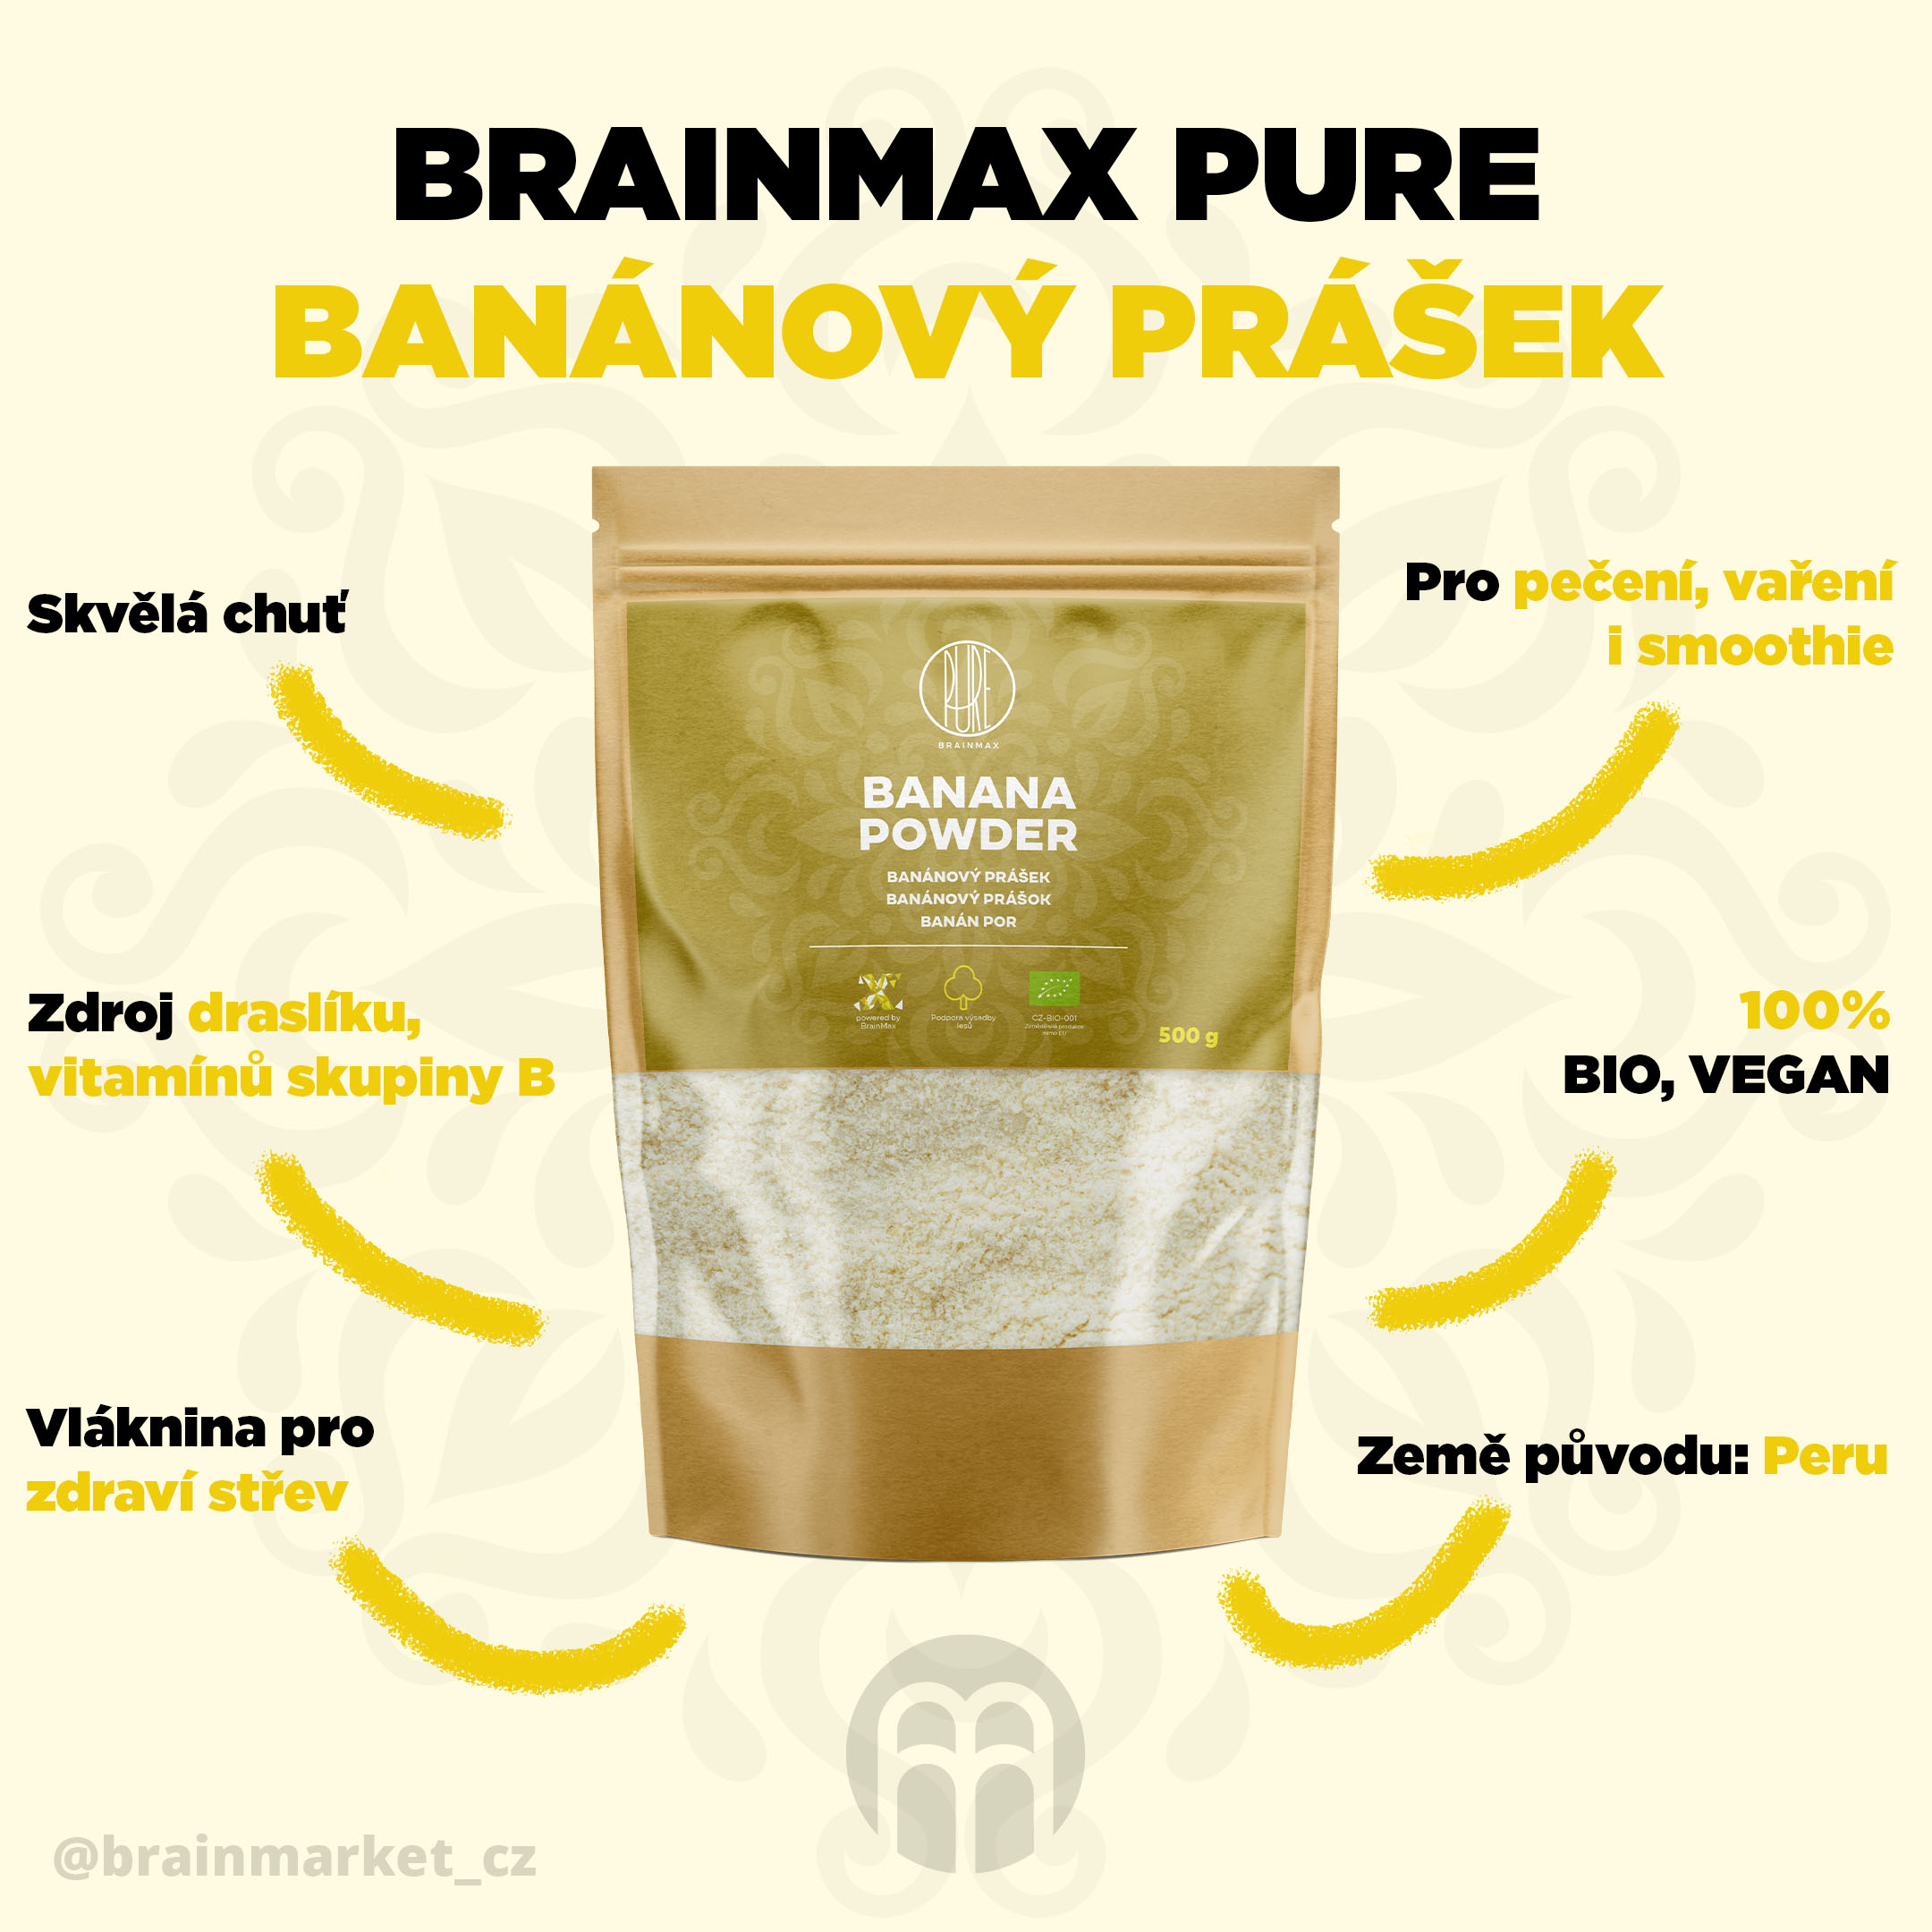 brainmax pure banana powder infographics brainmarket CZ (1)